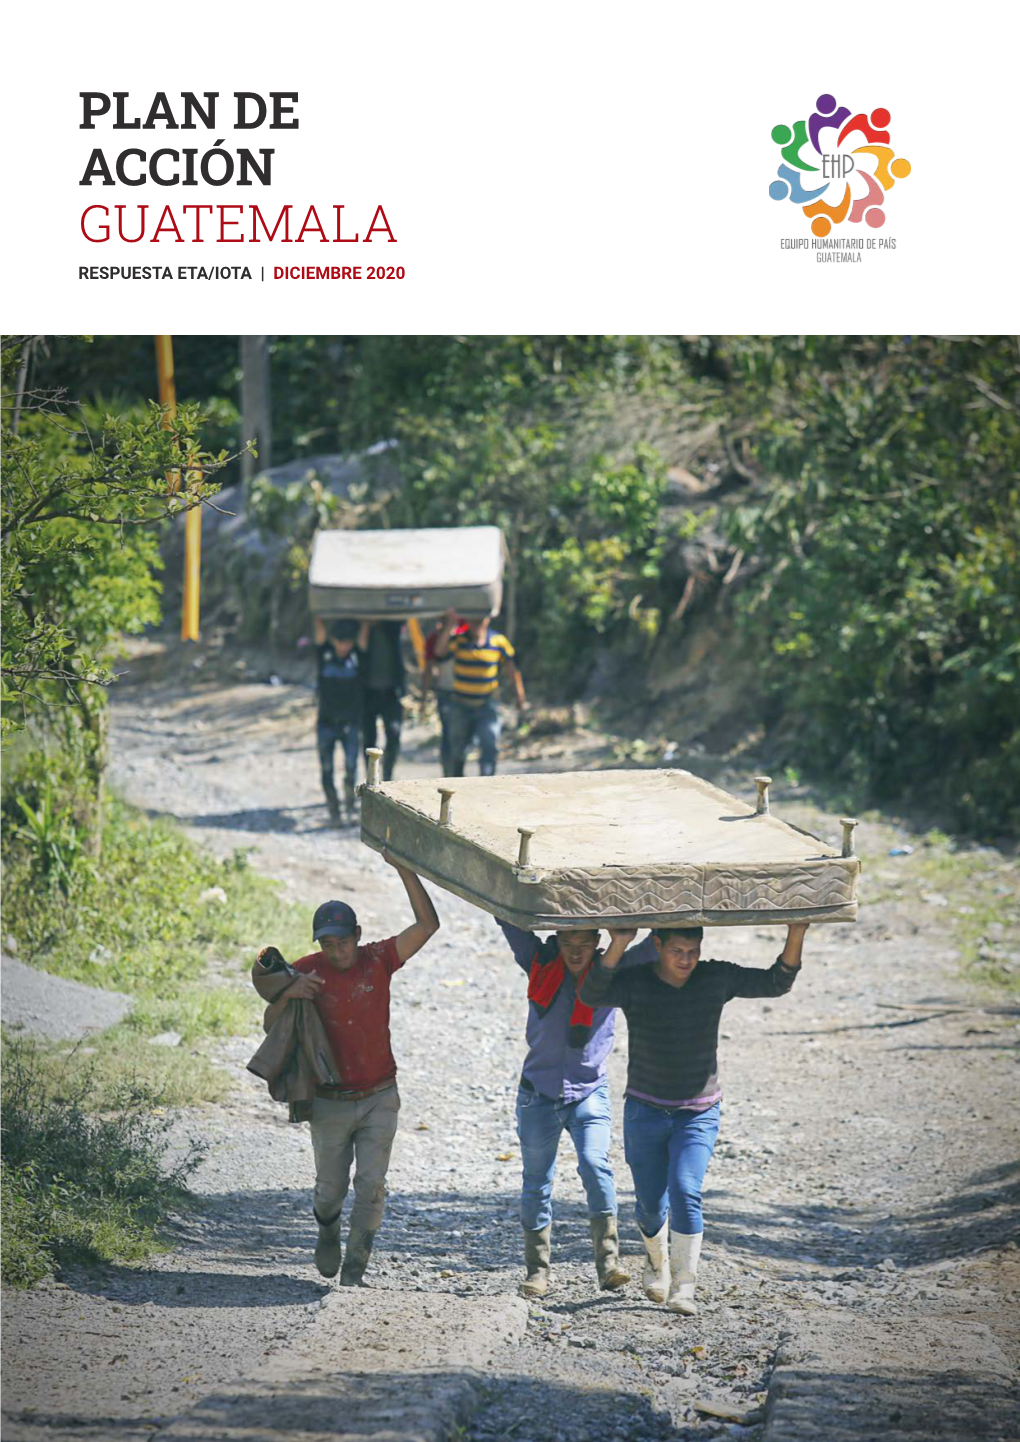 Plan De Acción Guatemala Respuesta Eta/Iota | Diciembre 2020